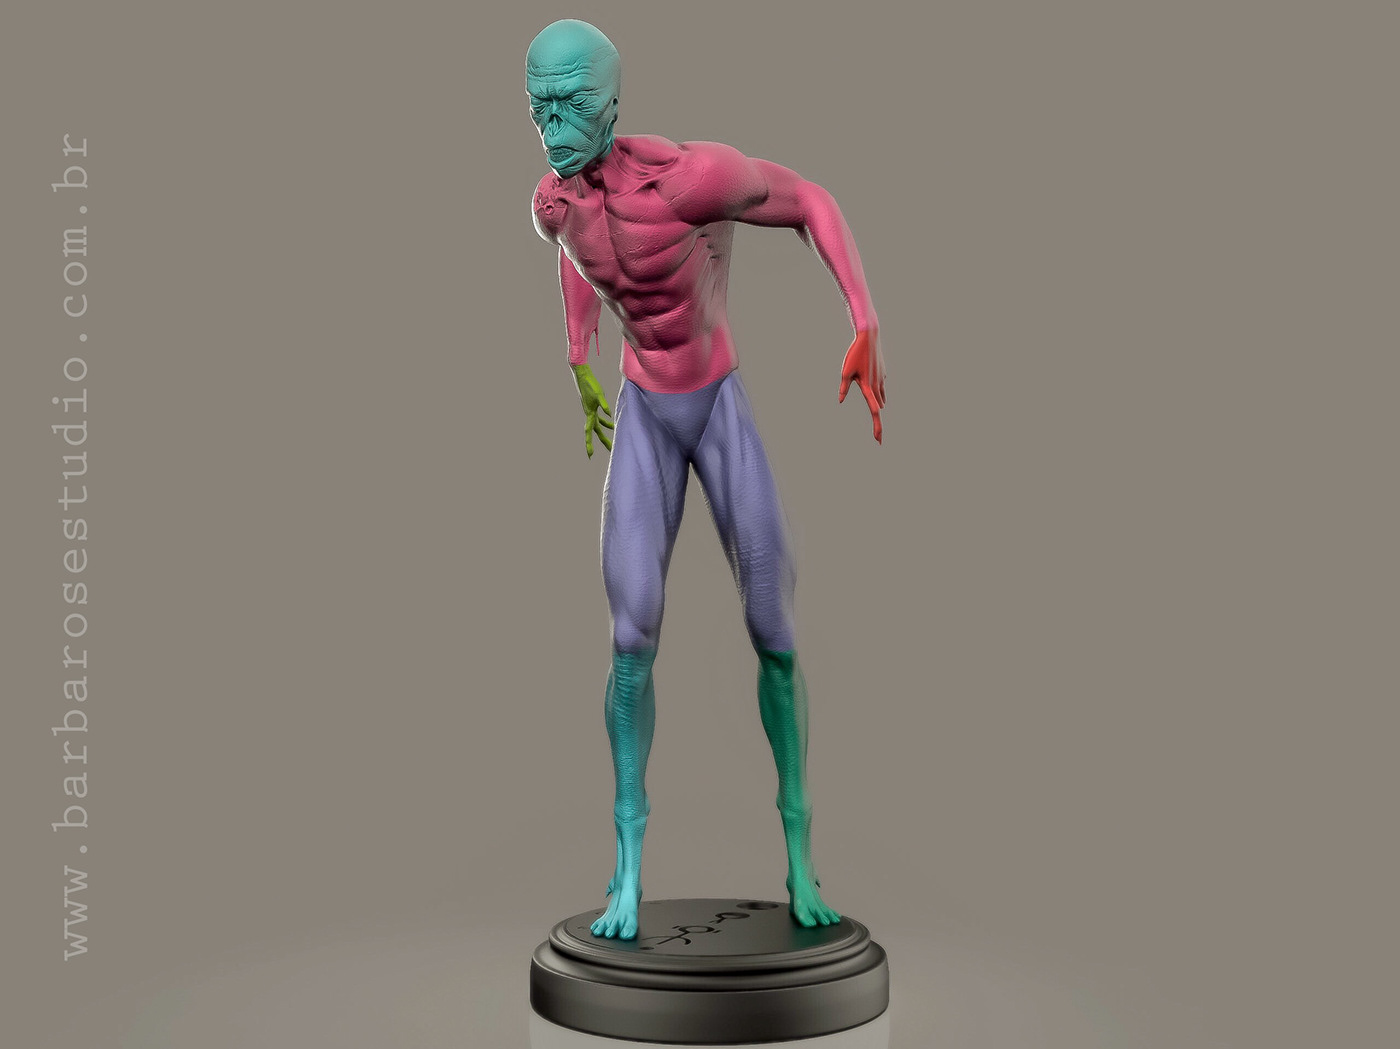 Zbrush impressao3d creaturedesigner character character design creature design impressão alien modelagem3d